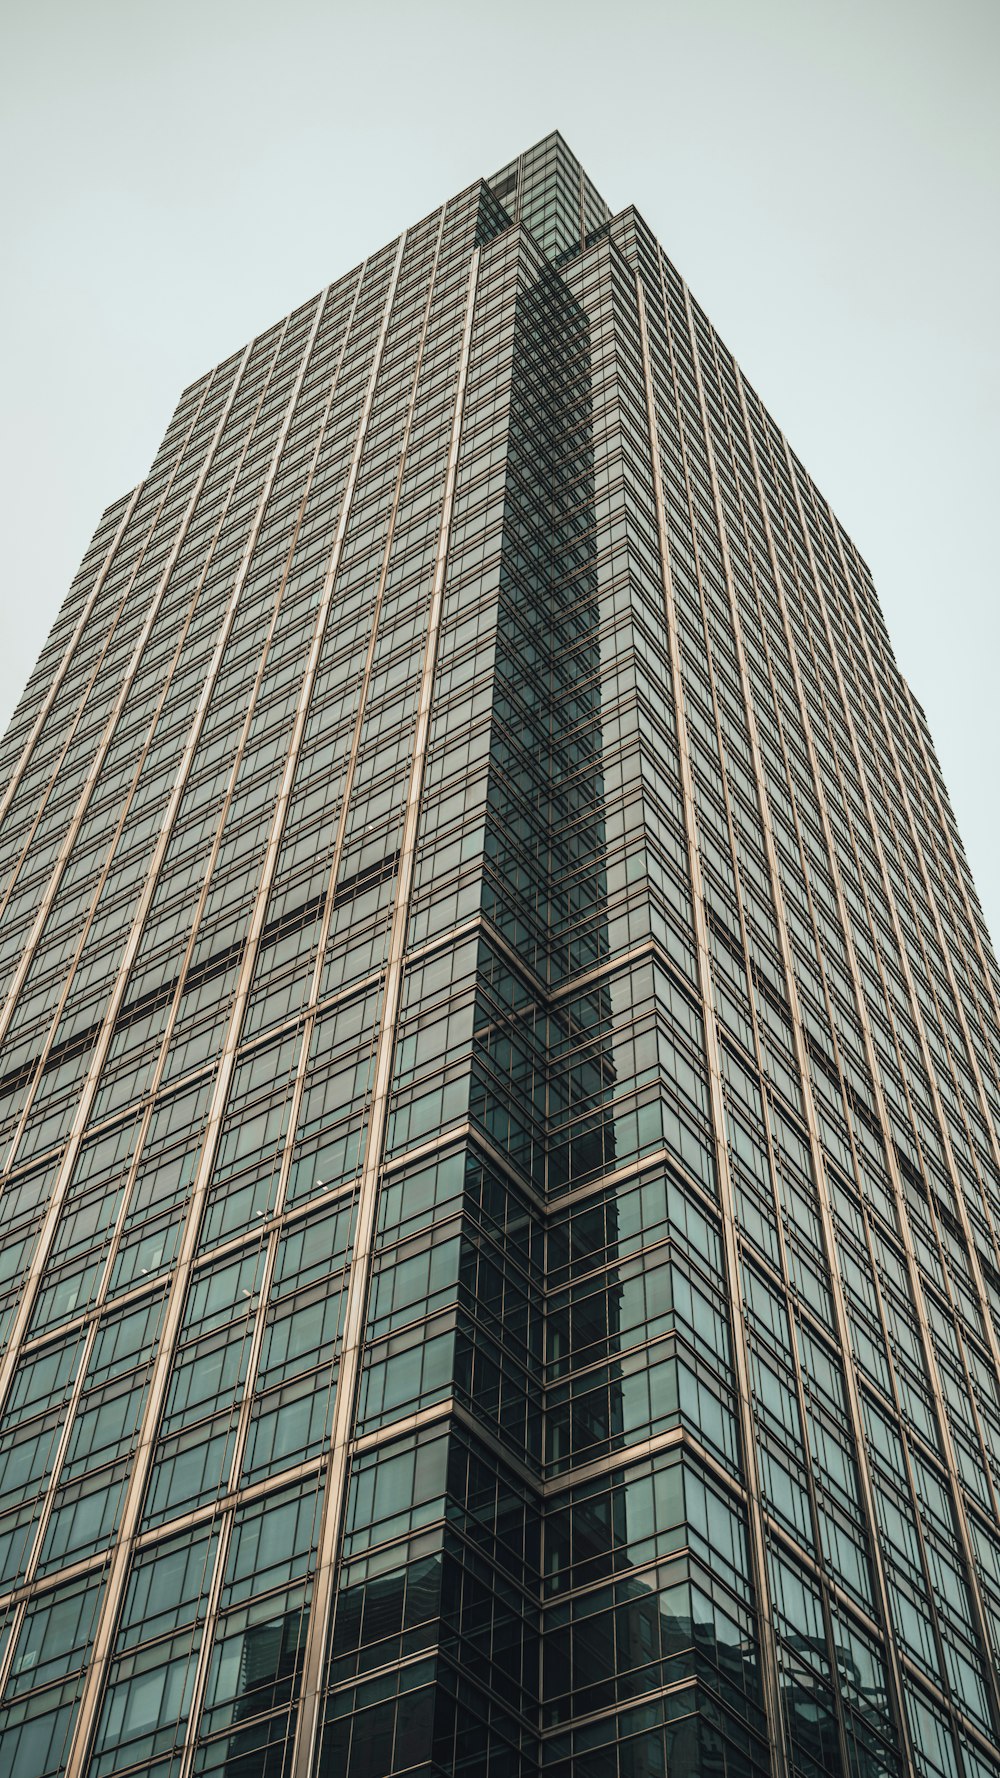 fotografia de baixo ângulo do edifício do arranha-céus